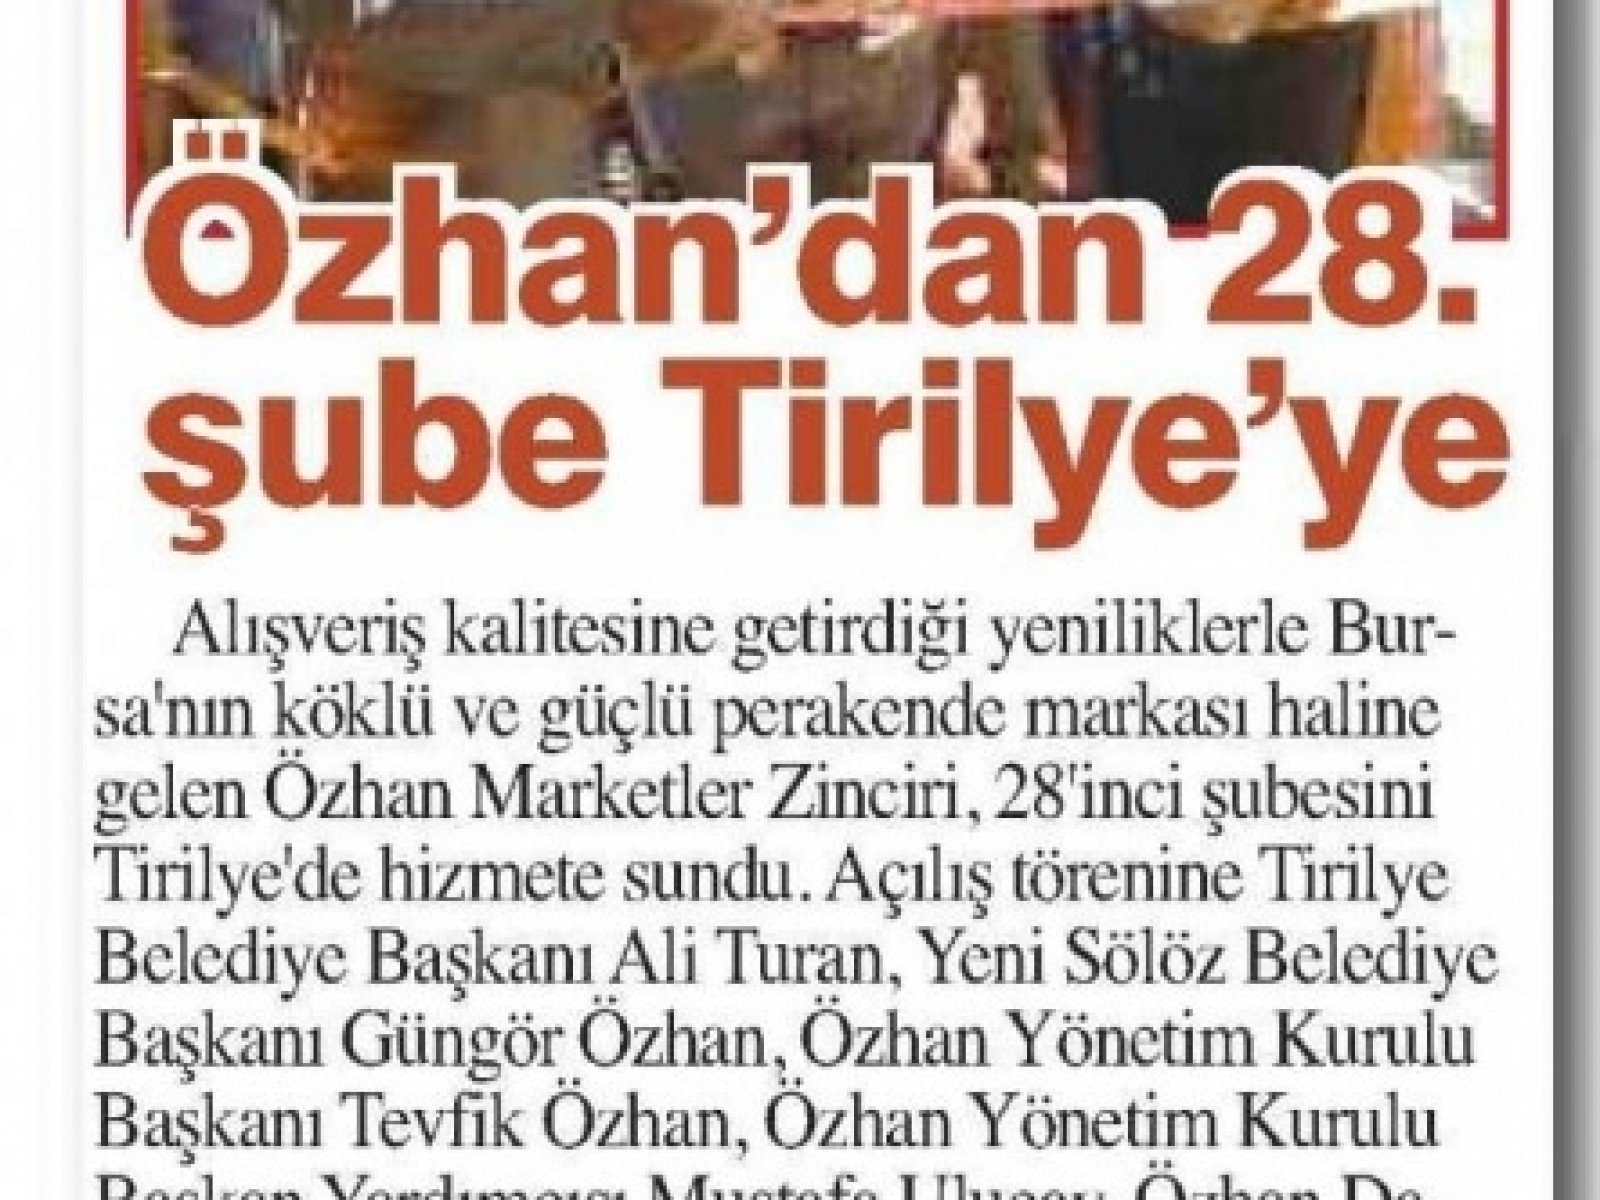 Özhan’dan 28.Şube Tirilye’ye